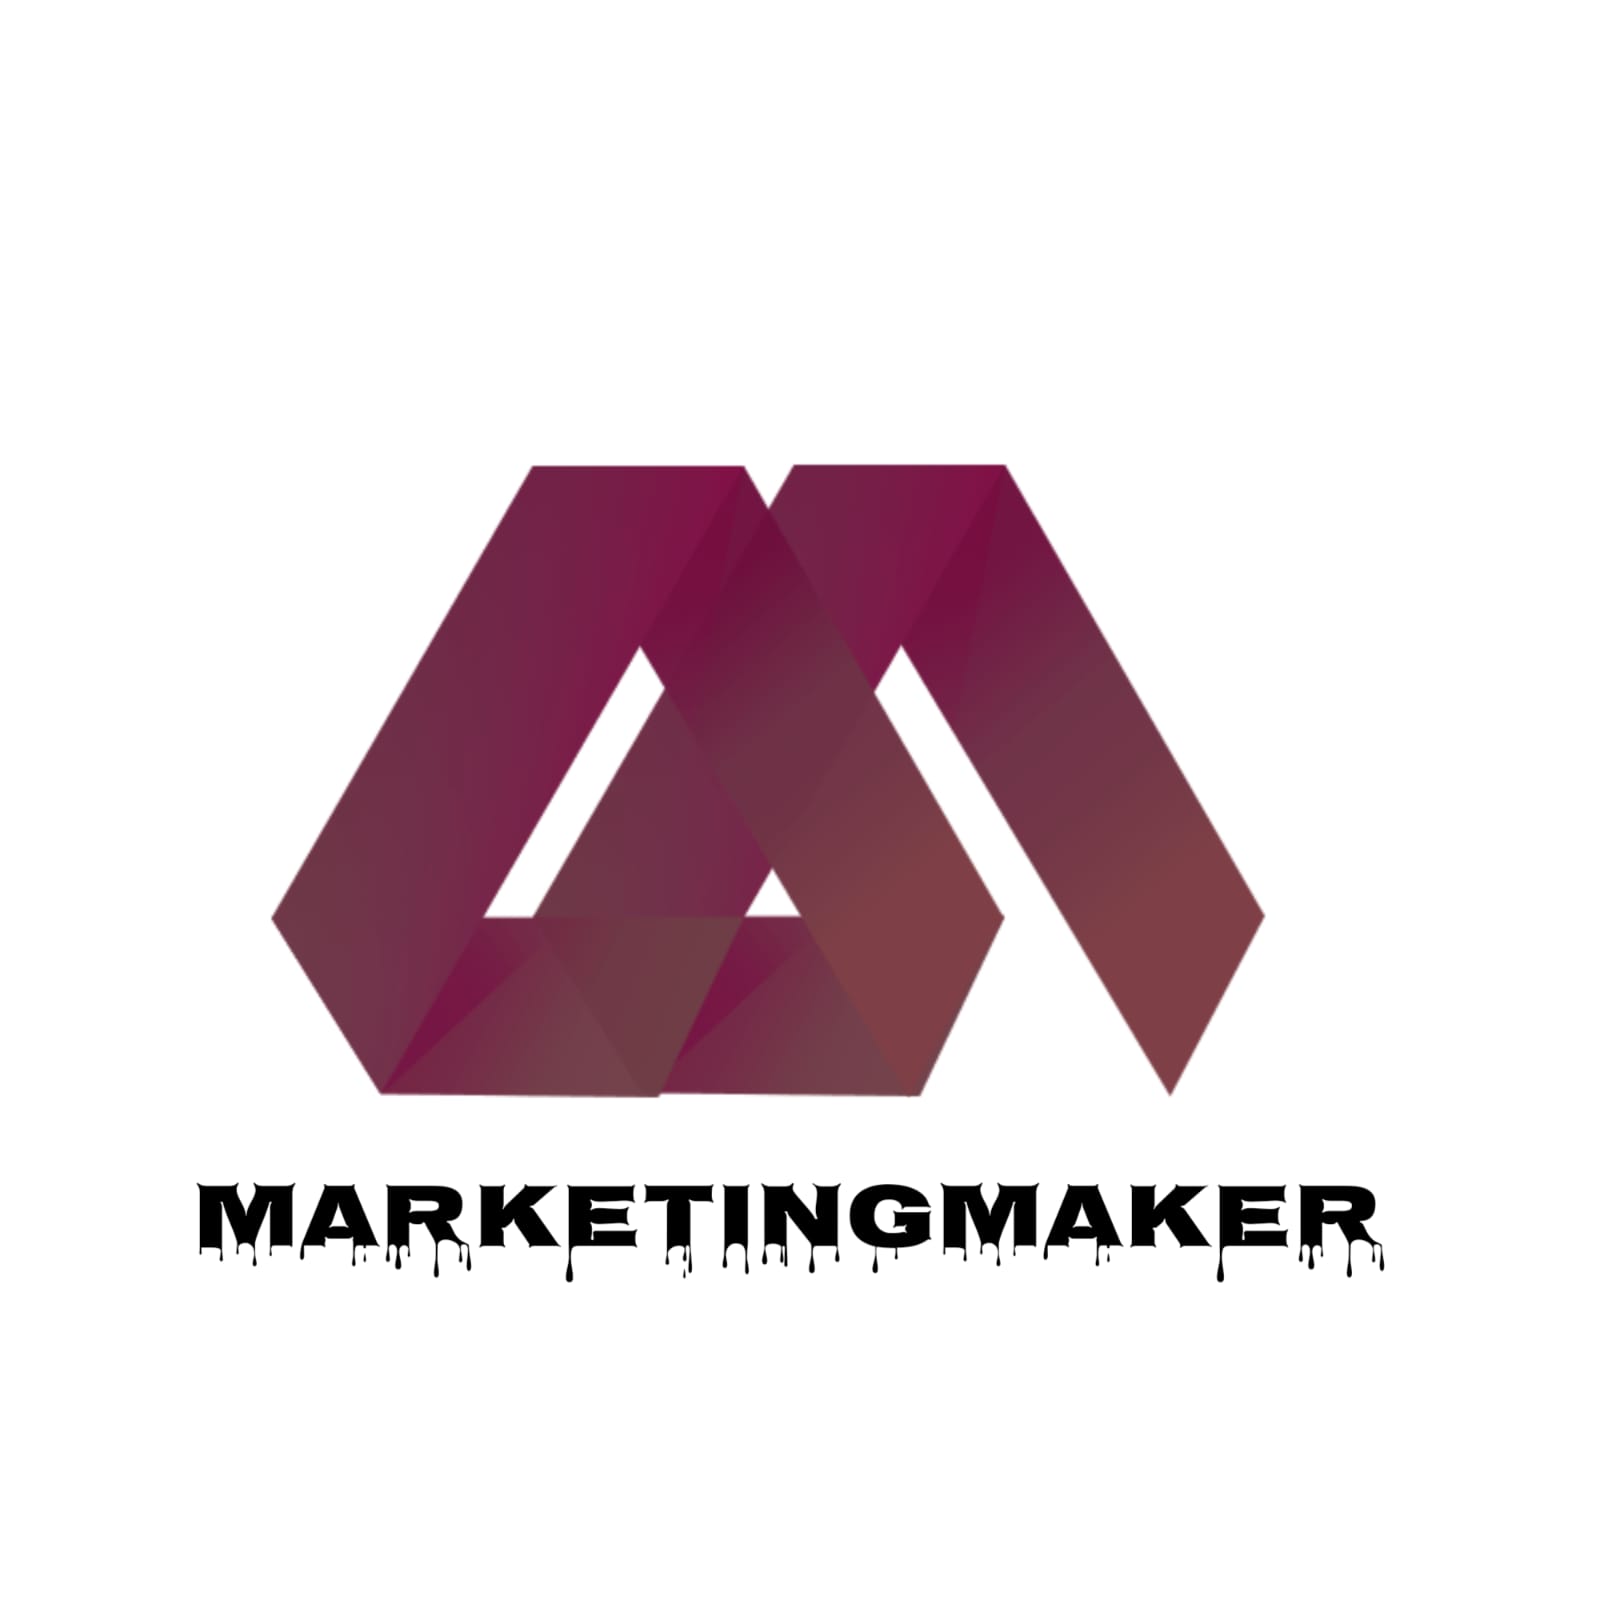 Marketing Maker KG